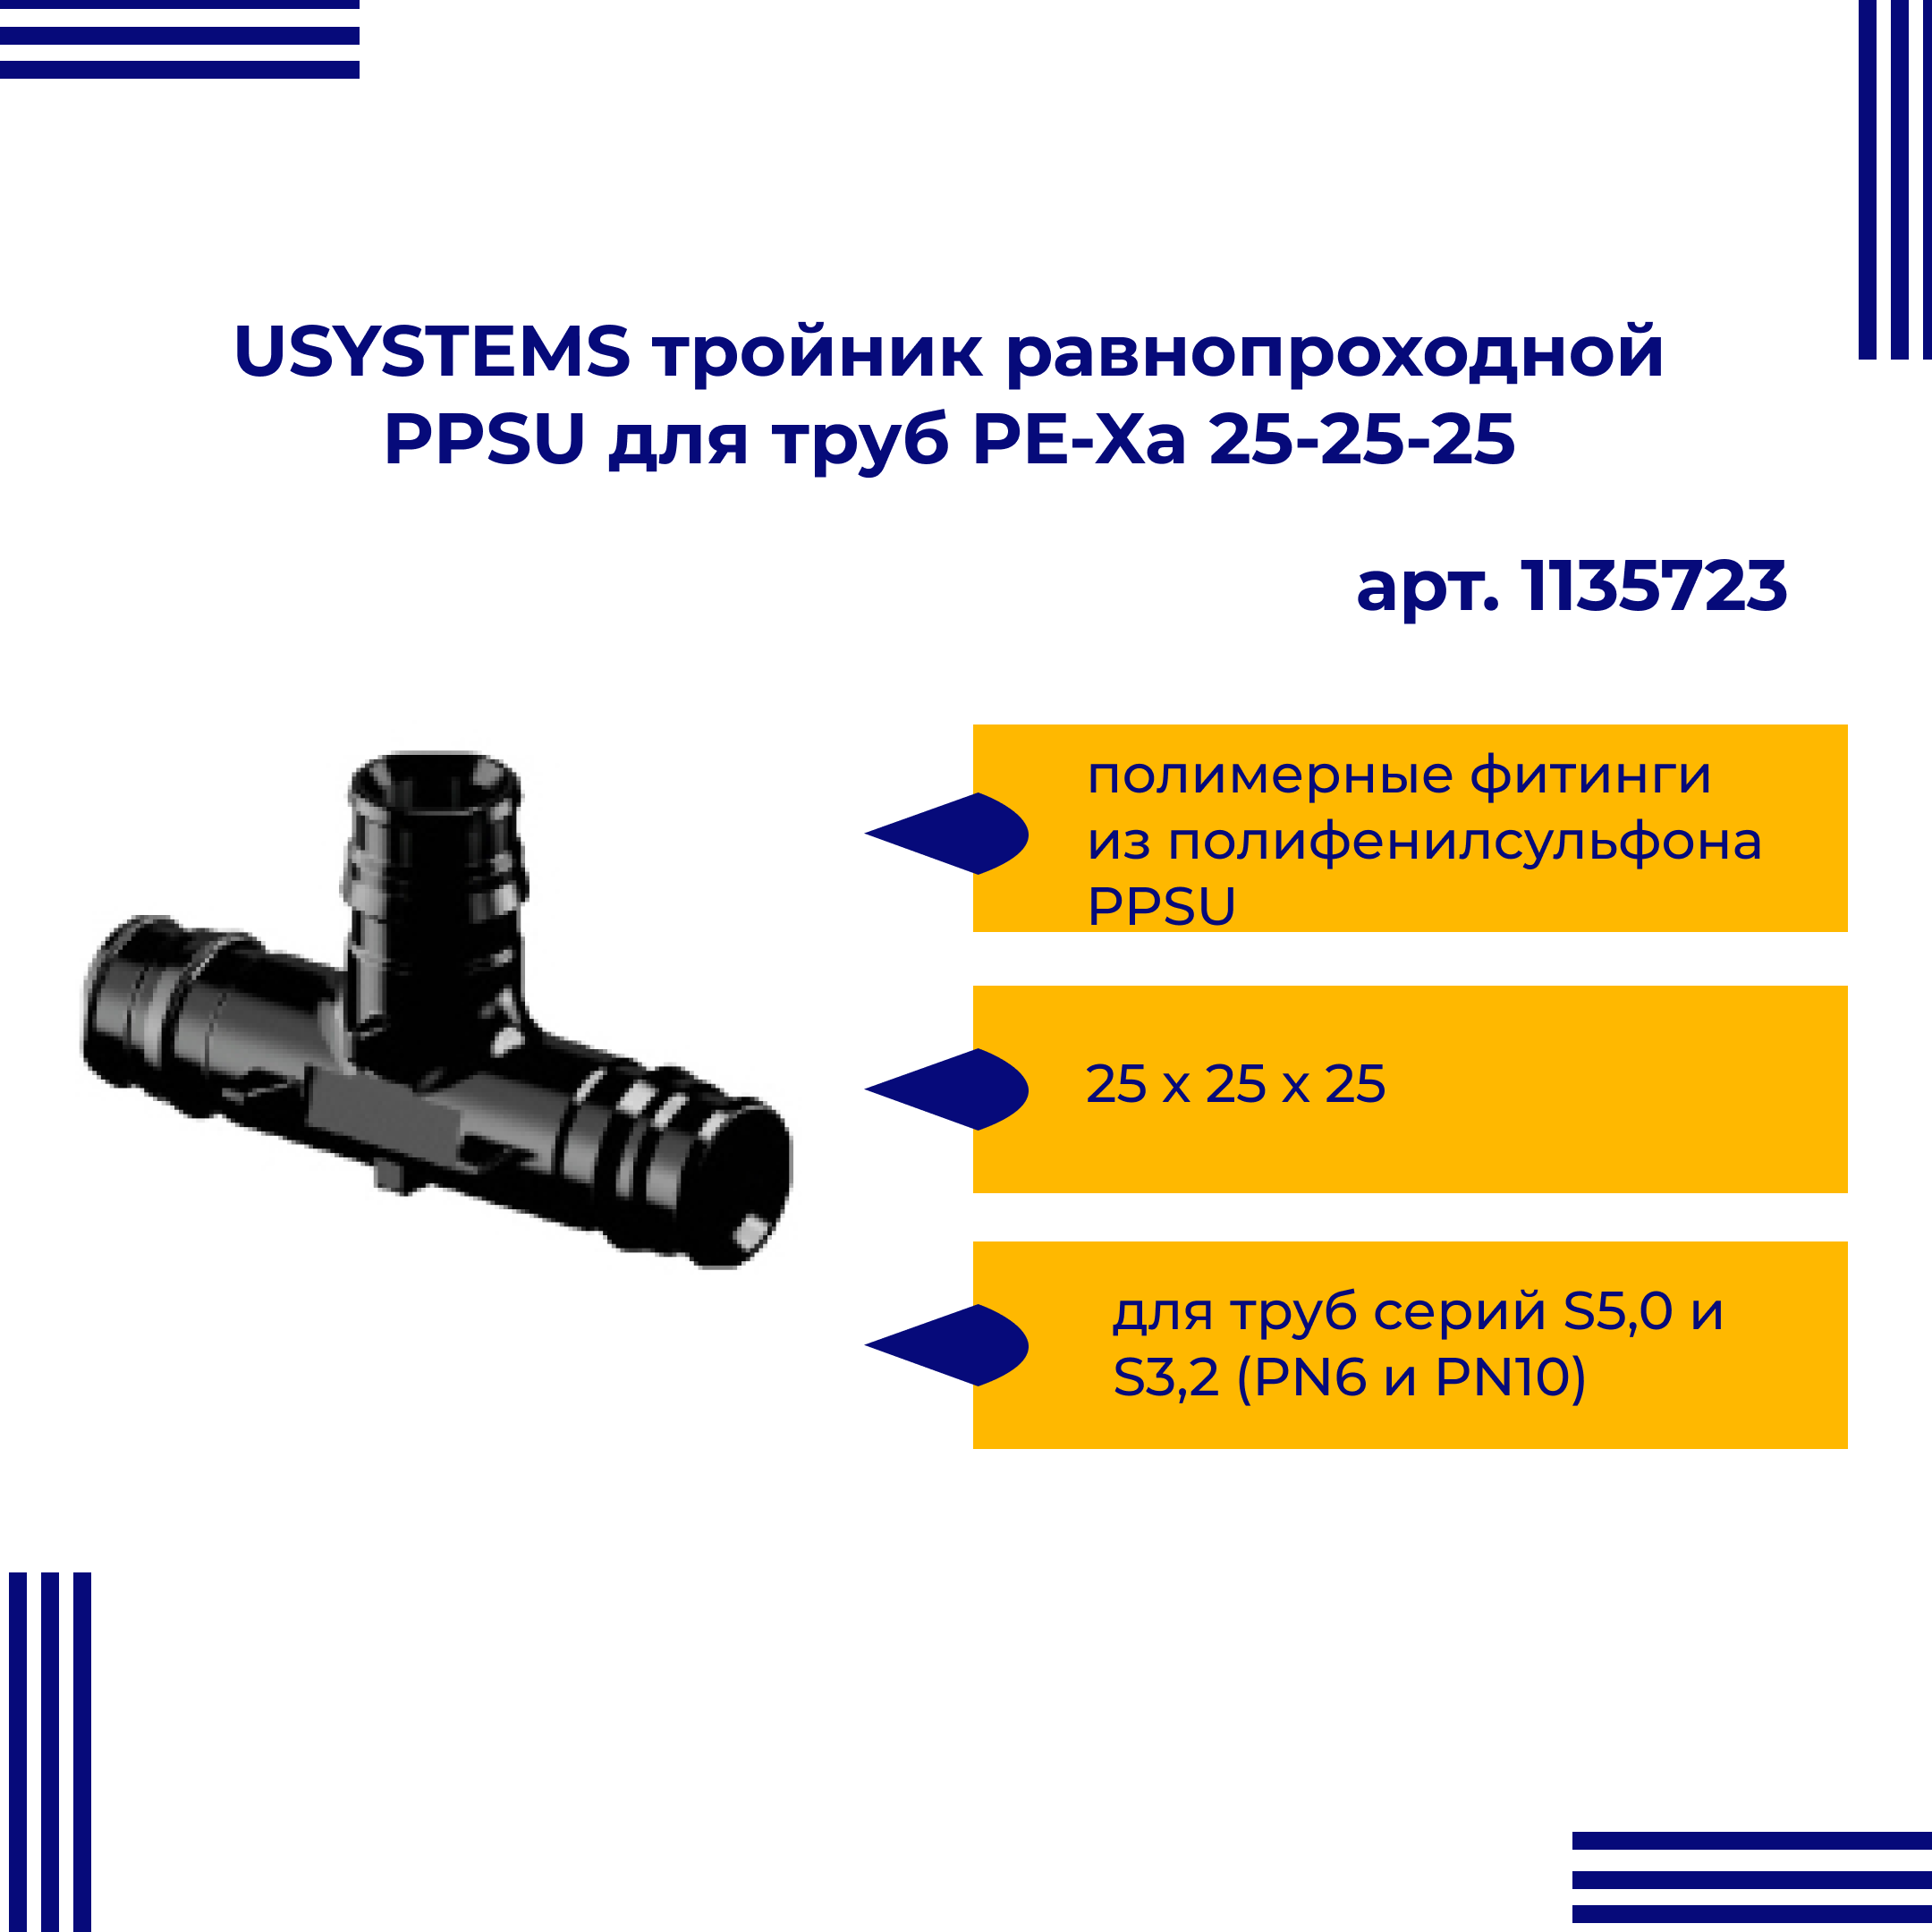 Тройник PPSU USYSTEMS 1135723 равнопроходной для труб PE-Xa 25-25-25 viega тройник ввв 3 4 3 4 3 4 бронза rx равнопроходной 264246